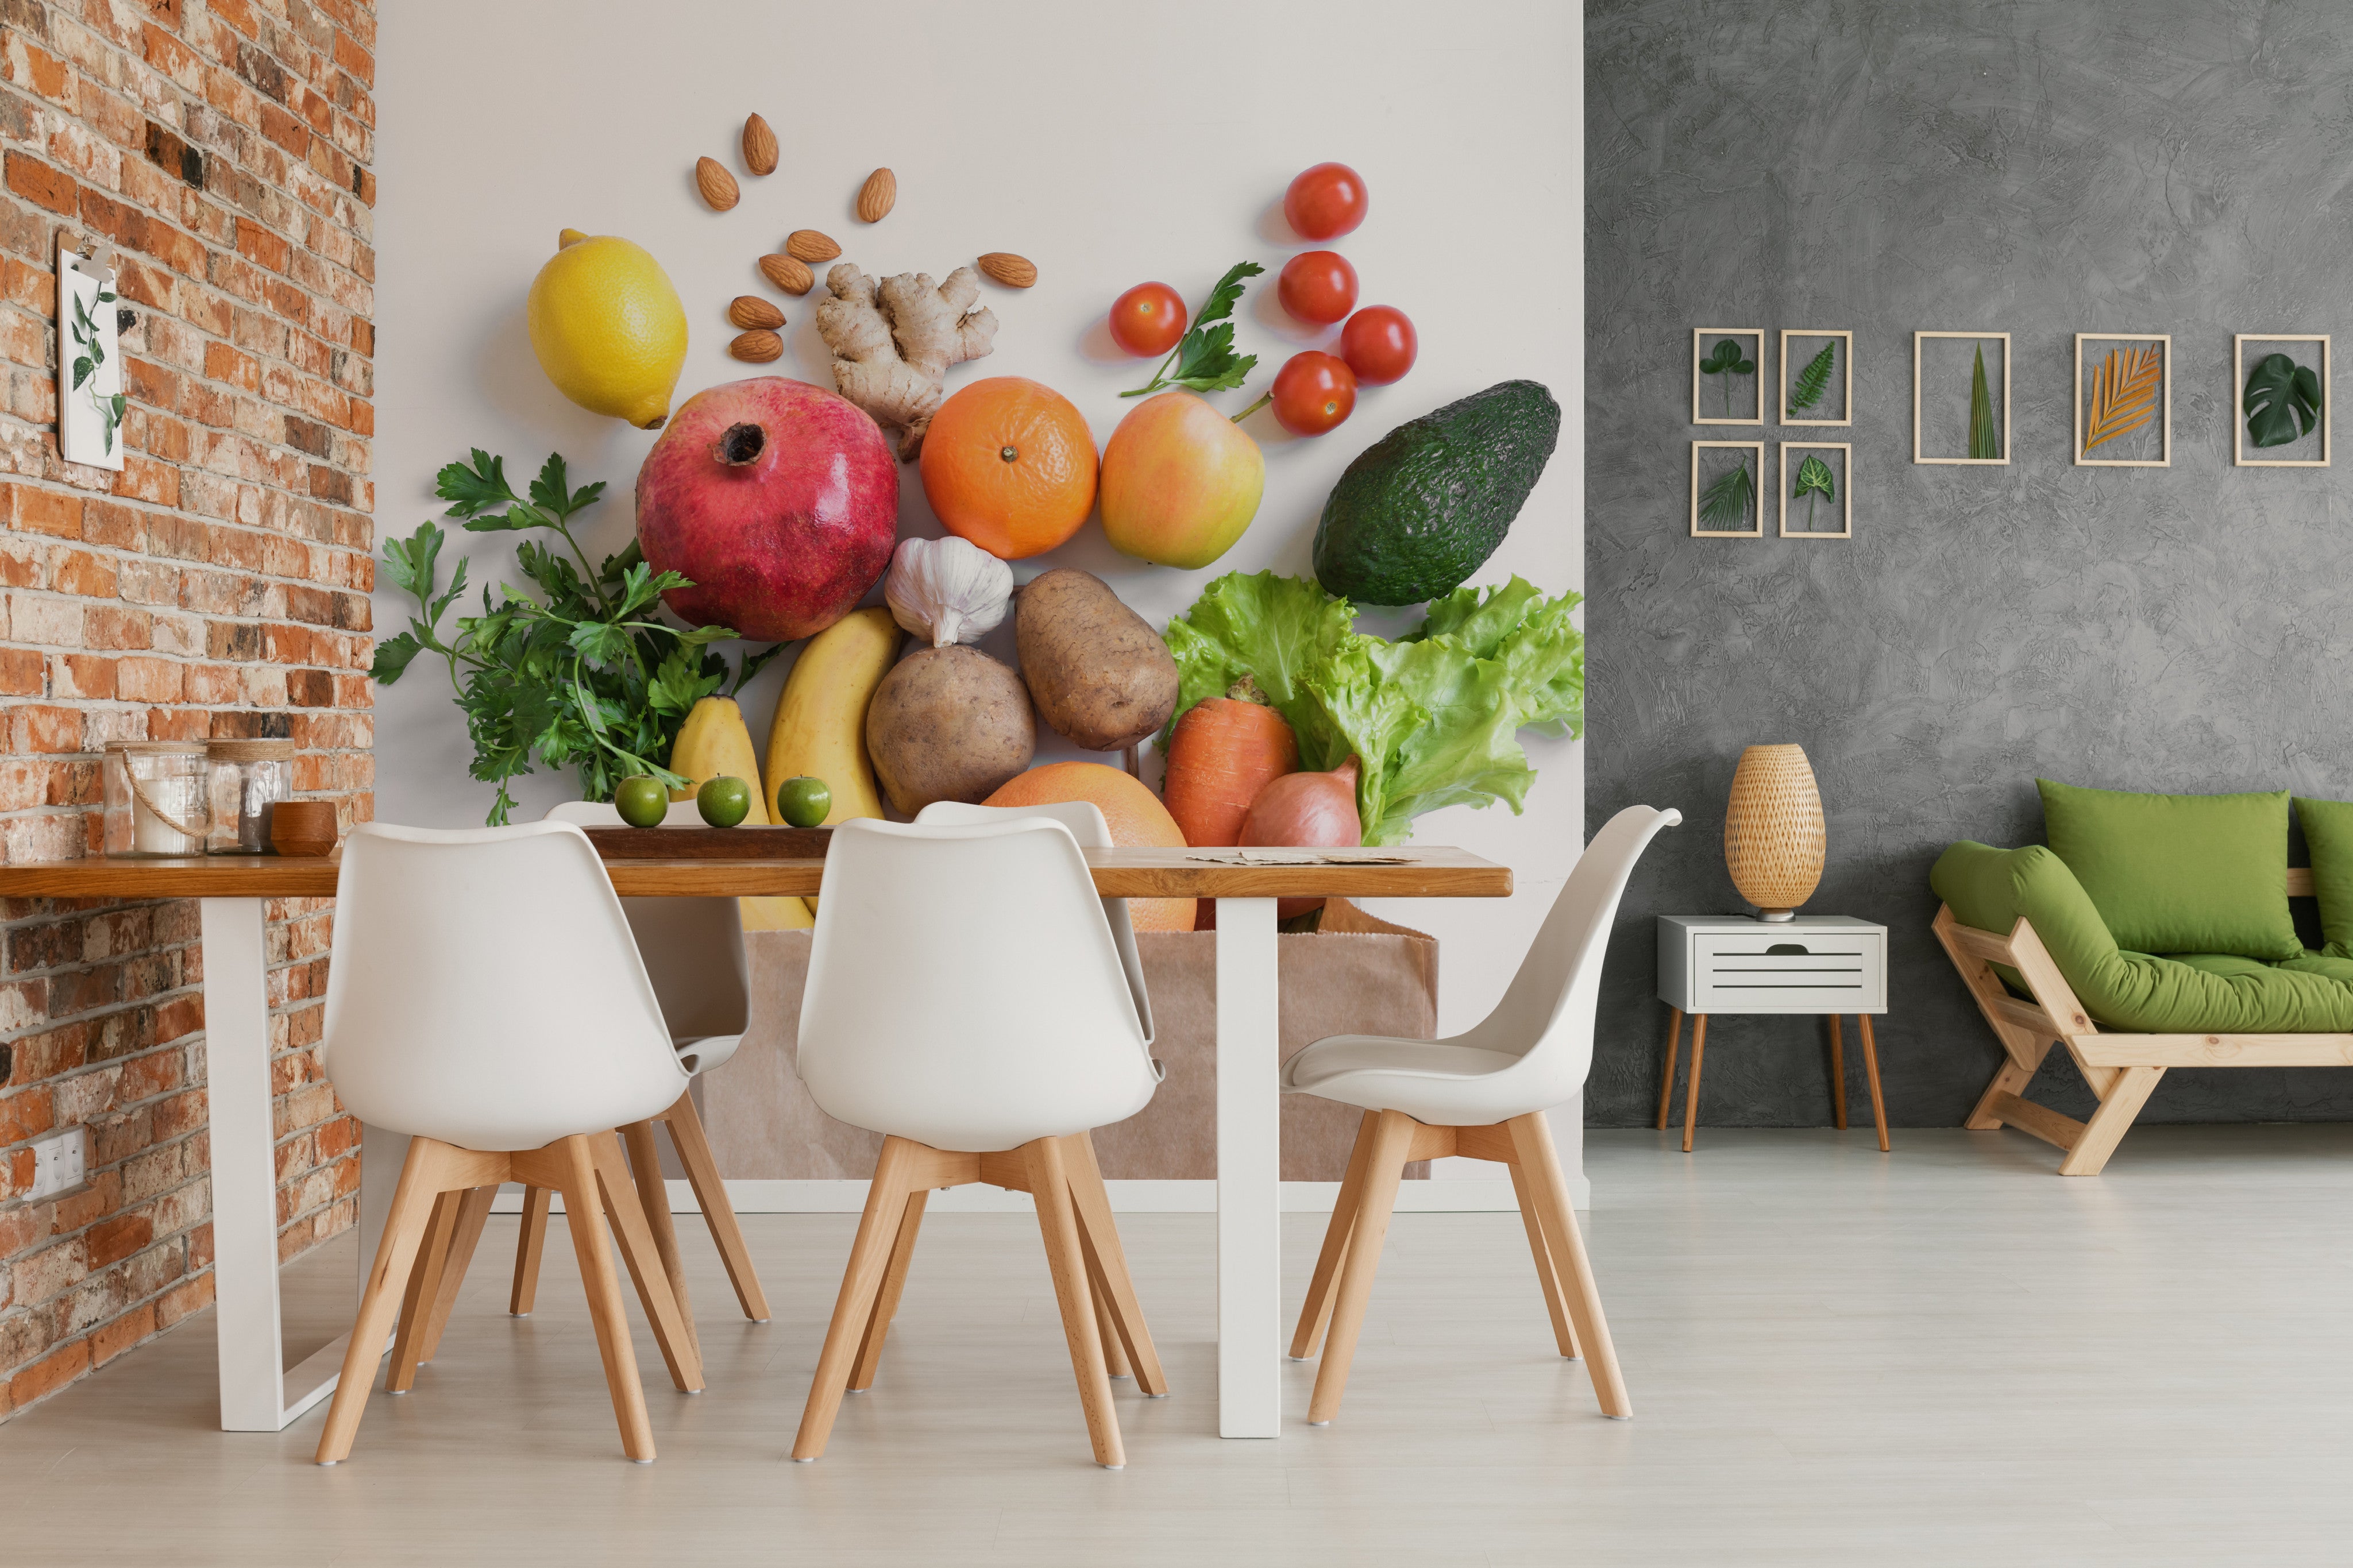 Esstisch in der Küche, dahinter eine Wand mit einer Fototapete. Bedruckt mit Obst und Gemüse